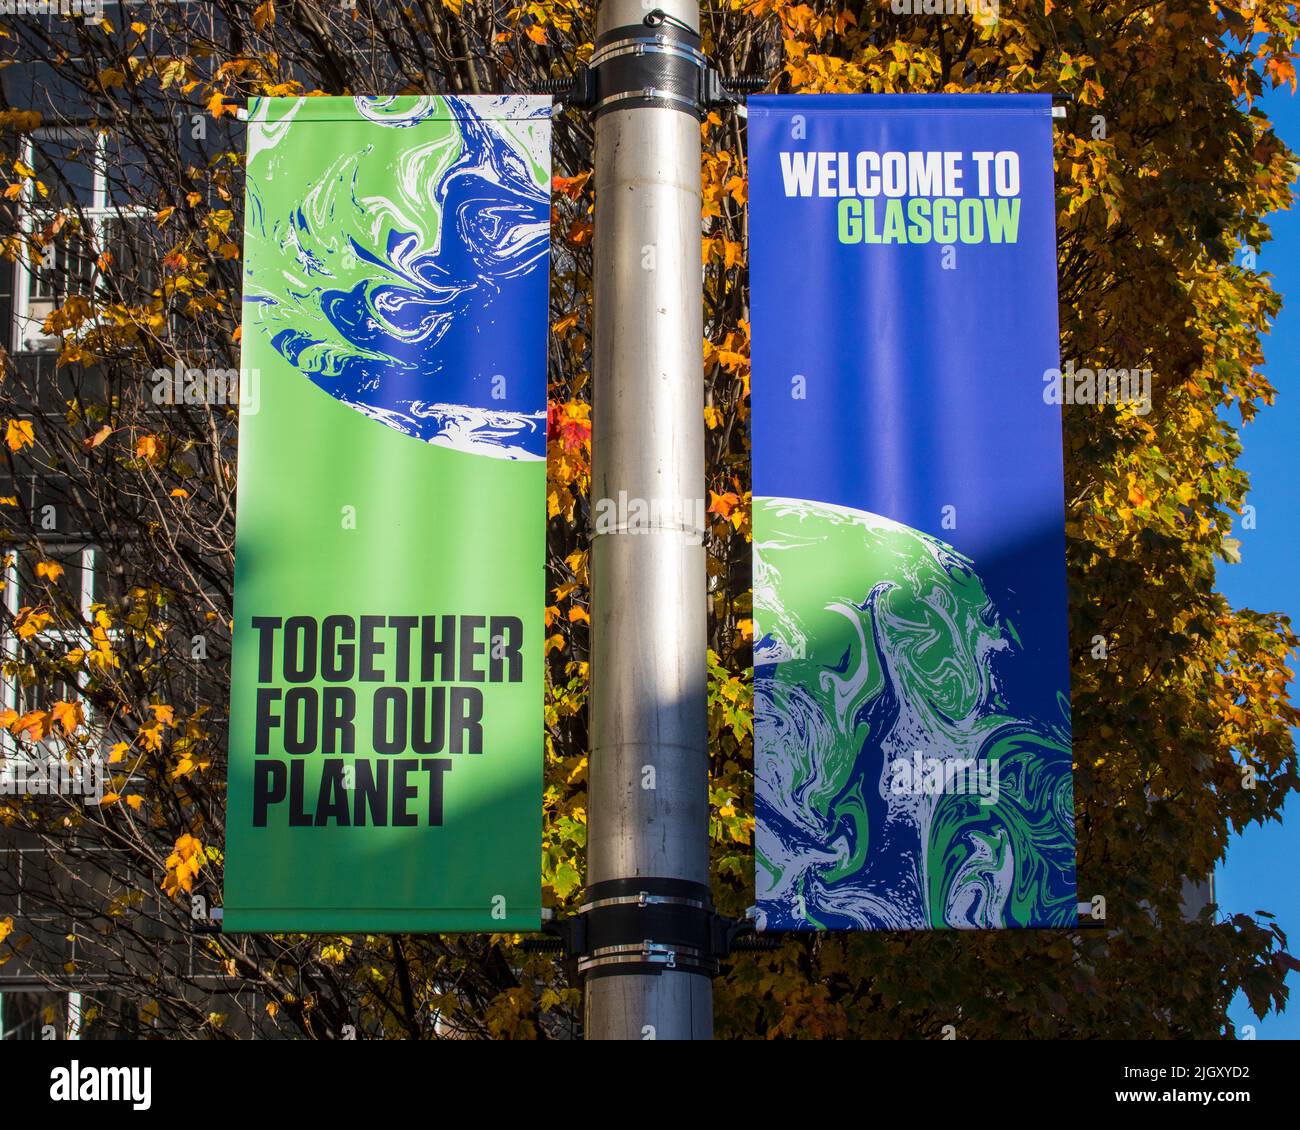 Glasgow, Escocia - Octubre 15th 2021: Un cartel que da la bienvenida a los visitantes de la ciudad de Glasgow en Escocia, coincidiendo con la Conferencia de las Naciones Unidas sobre el Cambio Climático Foto de stock